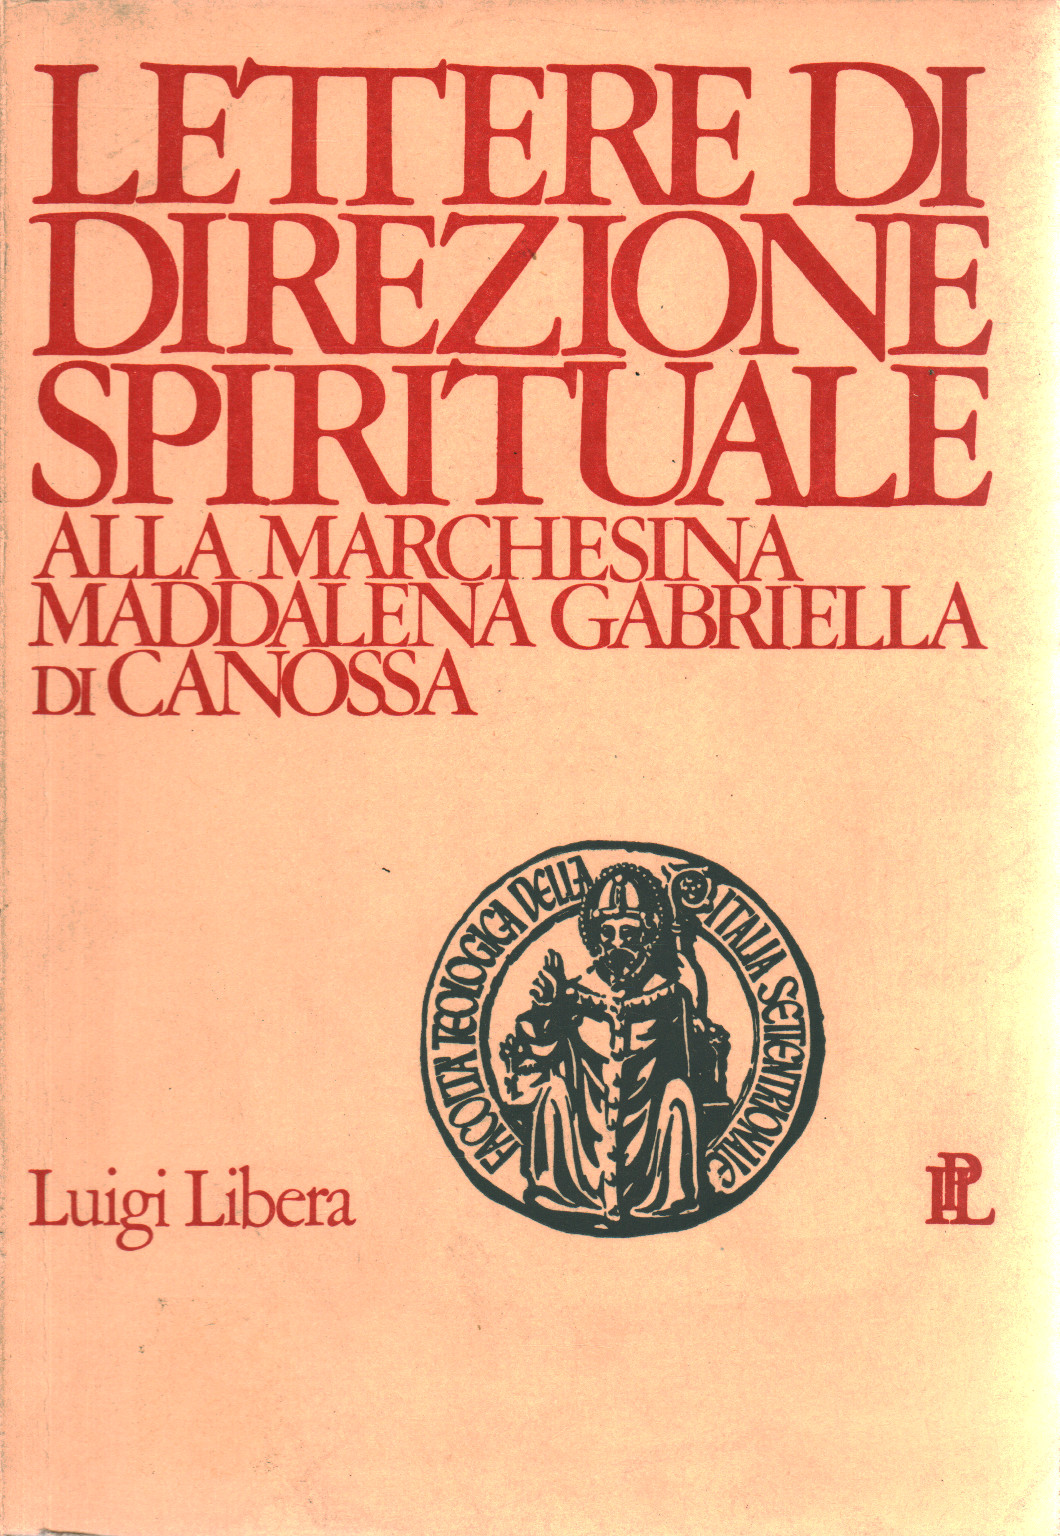 Lettere di direzione spirituale alla marchesina Ma, s.a.